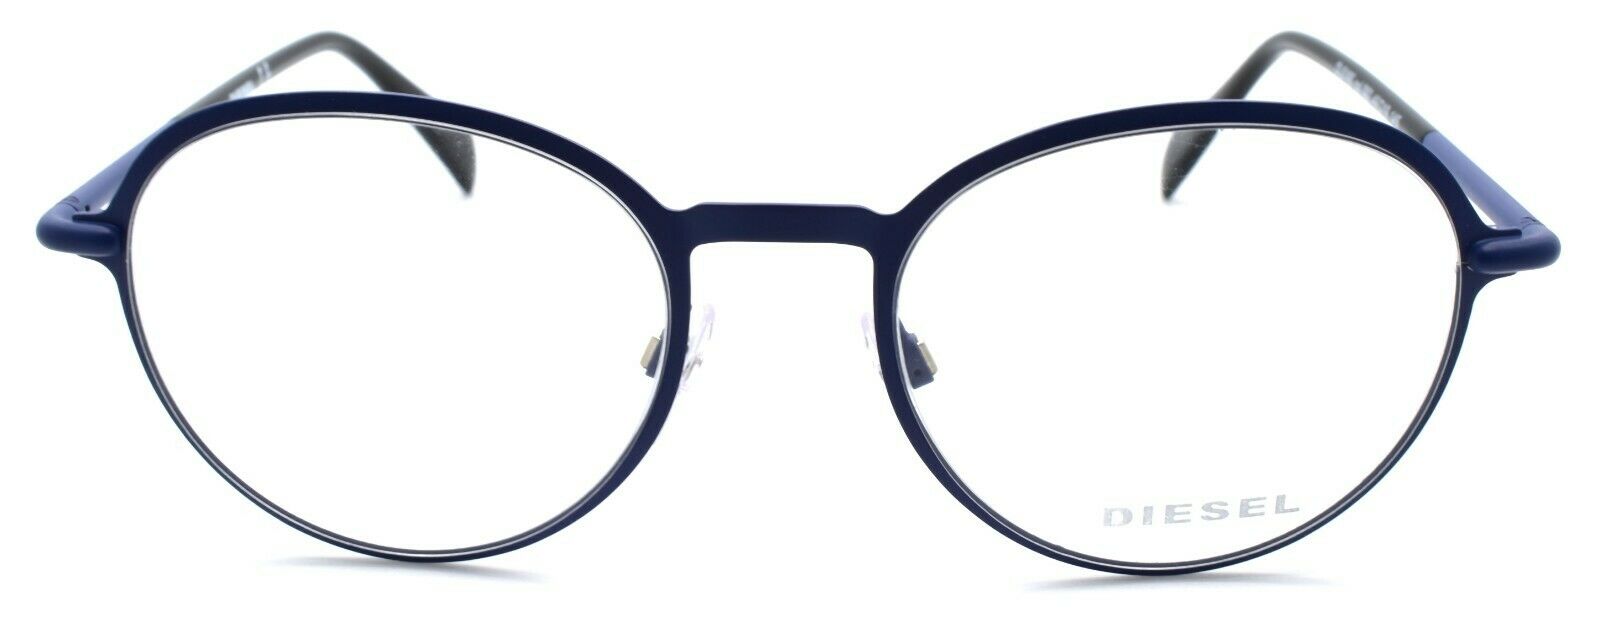 2-Diesel DL5165 092 Unisex Eyeglasses Frames 49-19-145 Matte Blue-664689708499-IKSpecs